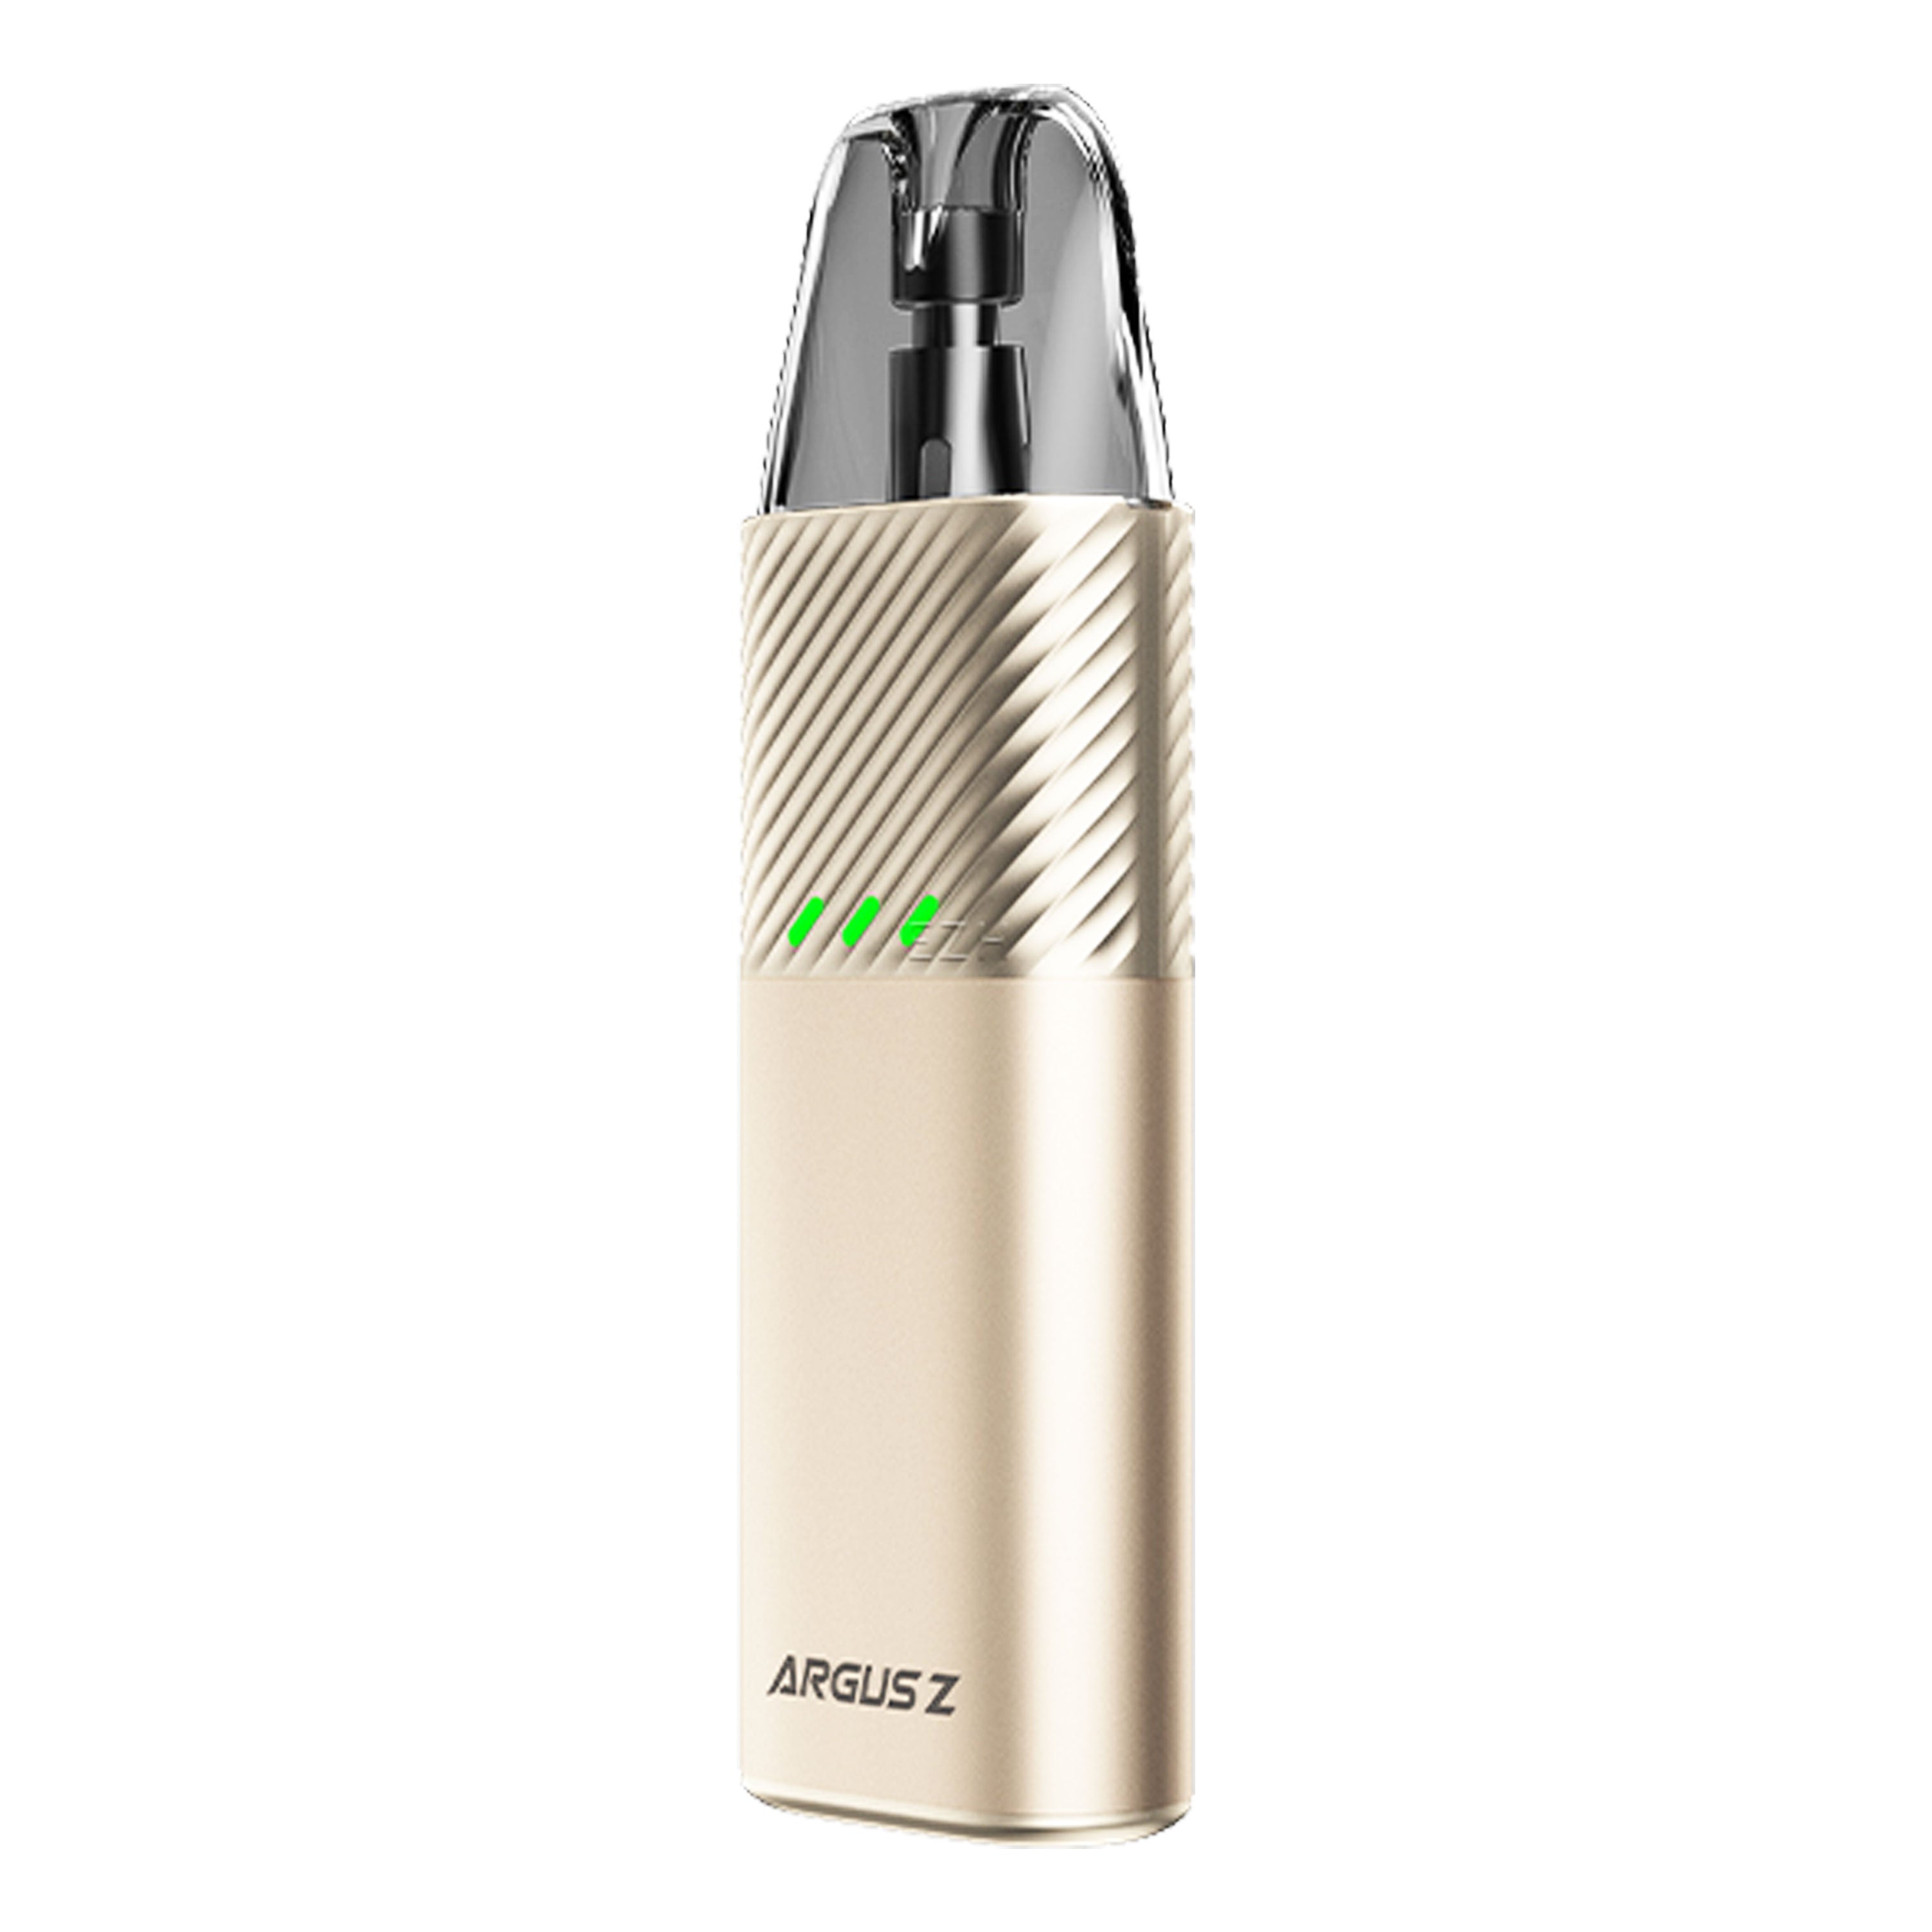 Voopoo - Argus Z Kit (2 ml) 900 mAh - E-Zigarette